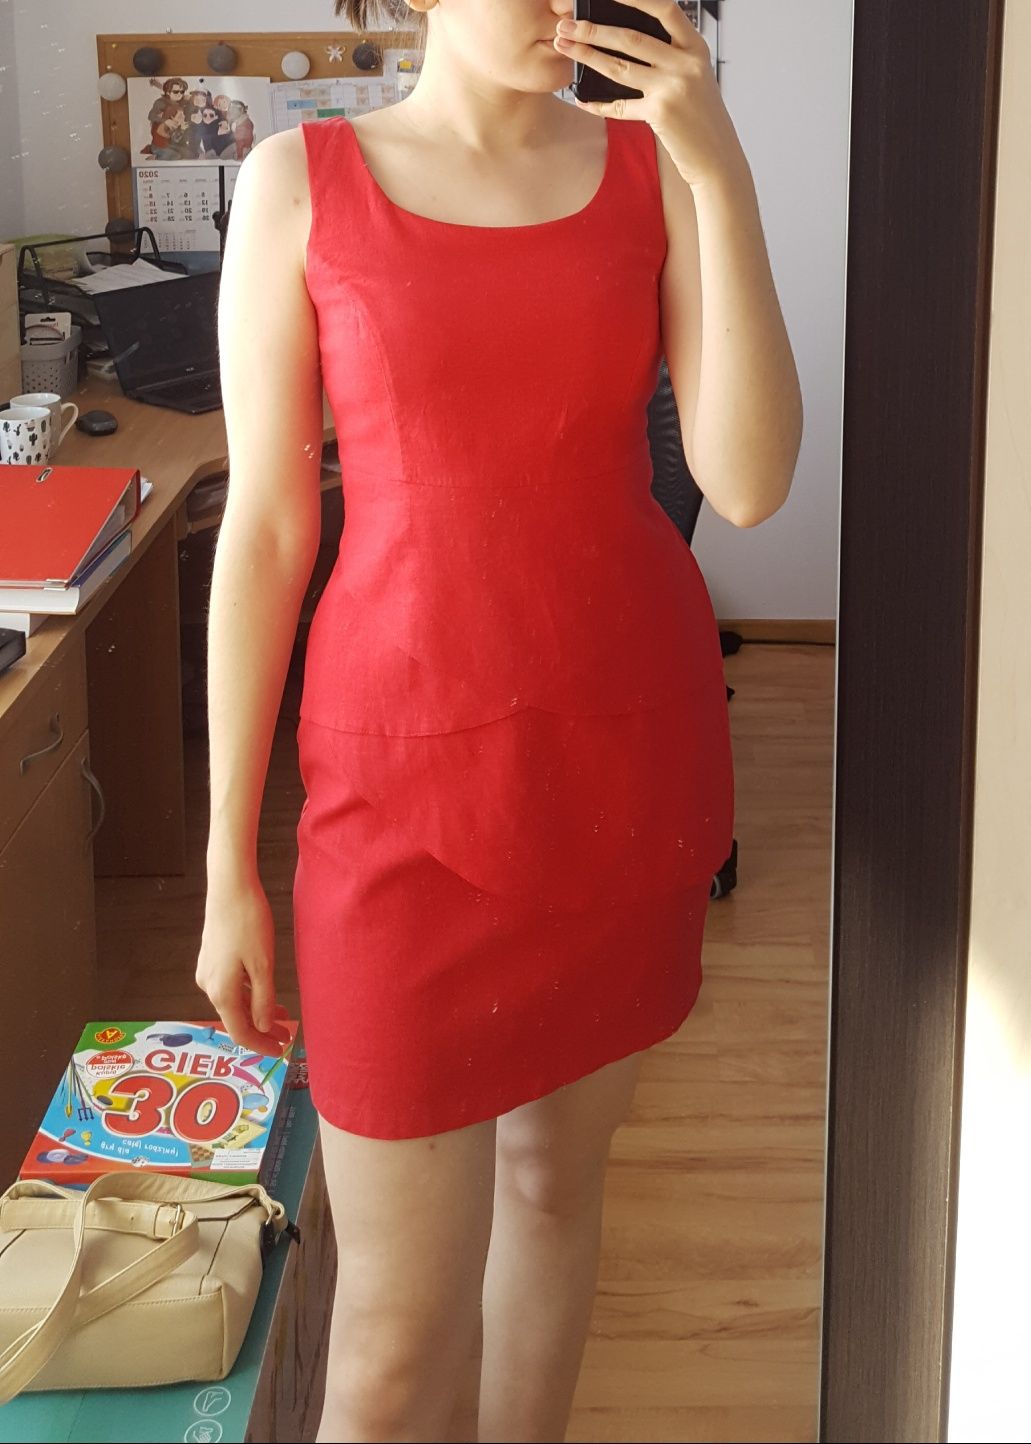 Czerwona lniana sukienka